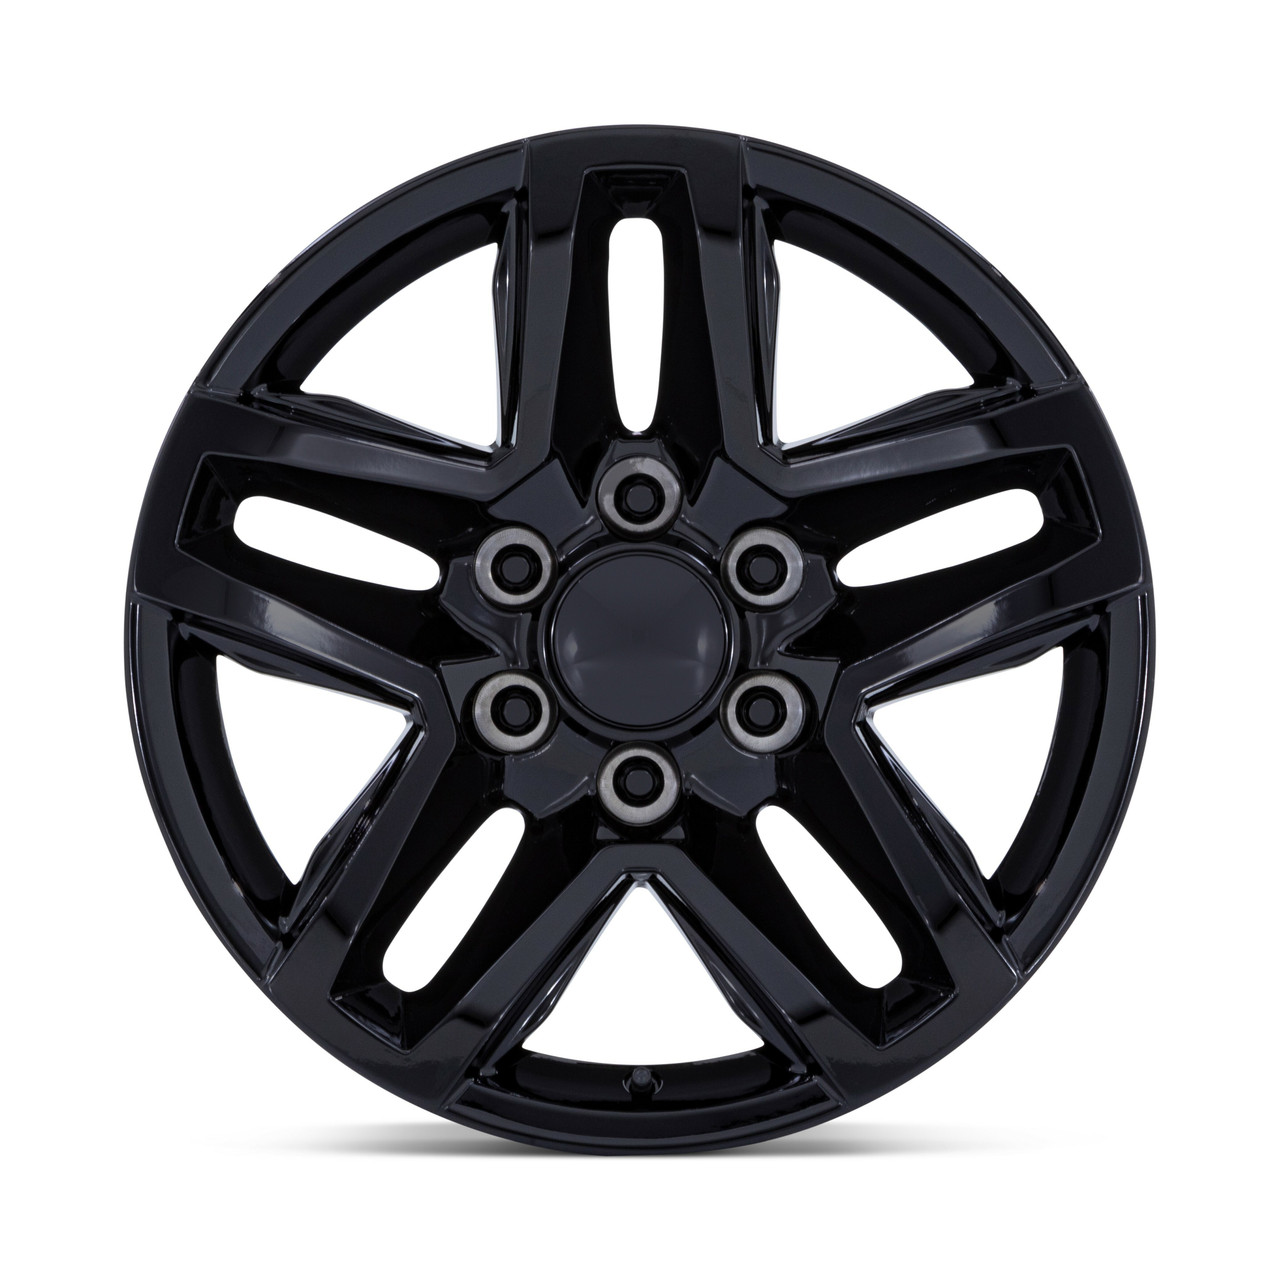 Set 4 18" Performance Replicas PR220 Gloss Black 18x8.5 Wheels 6x5.5 26mm Rims